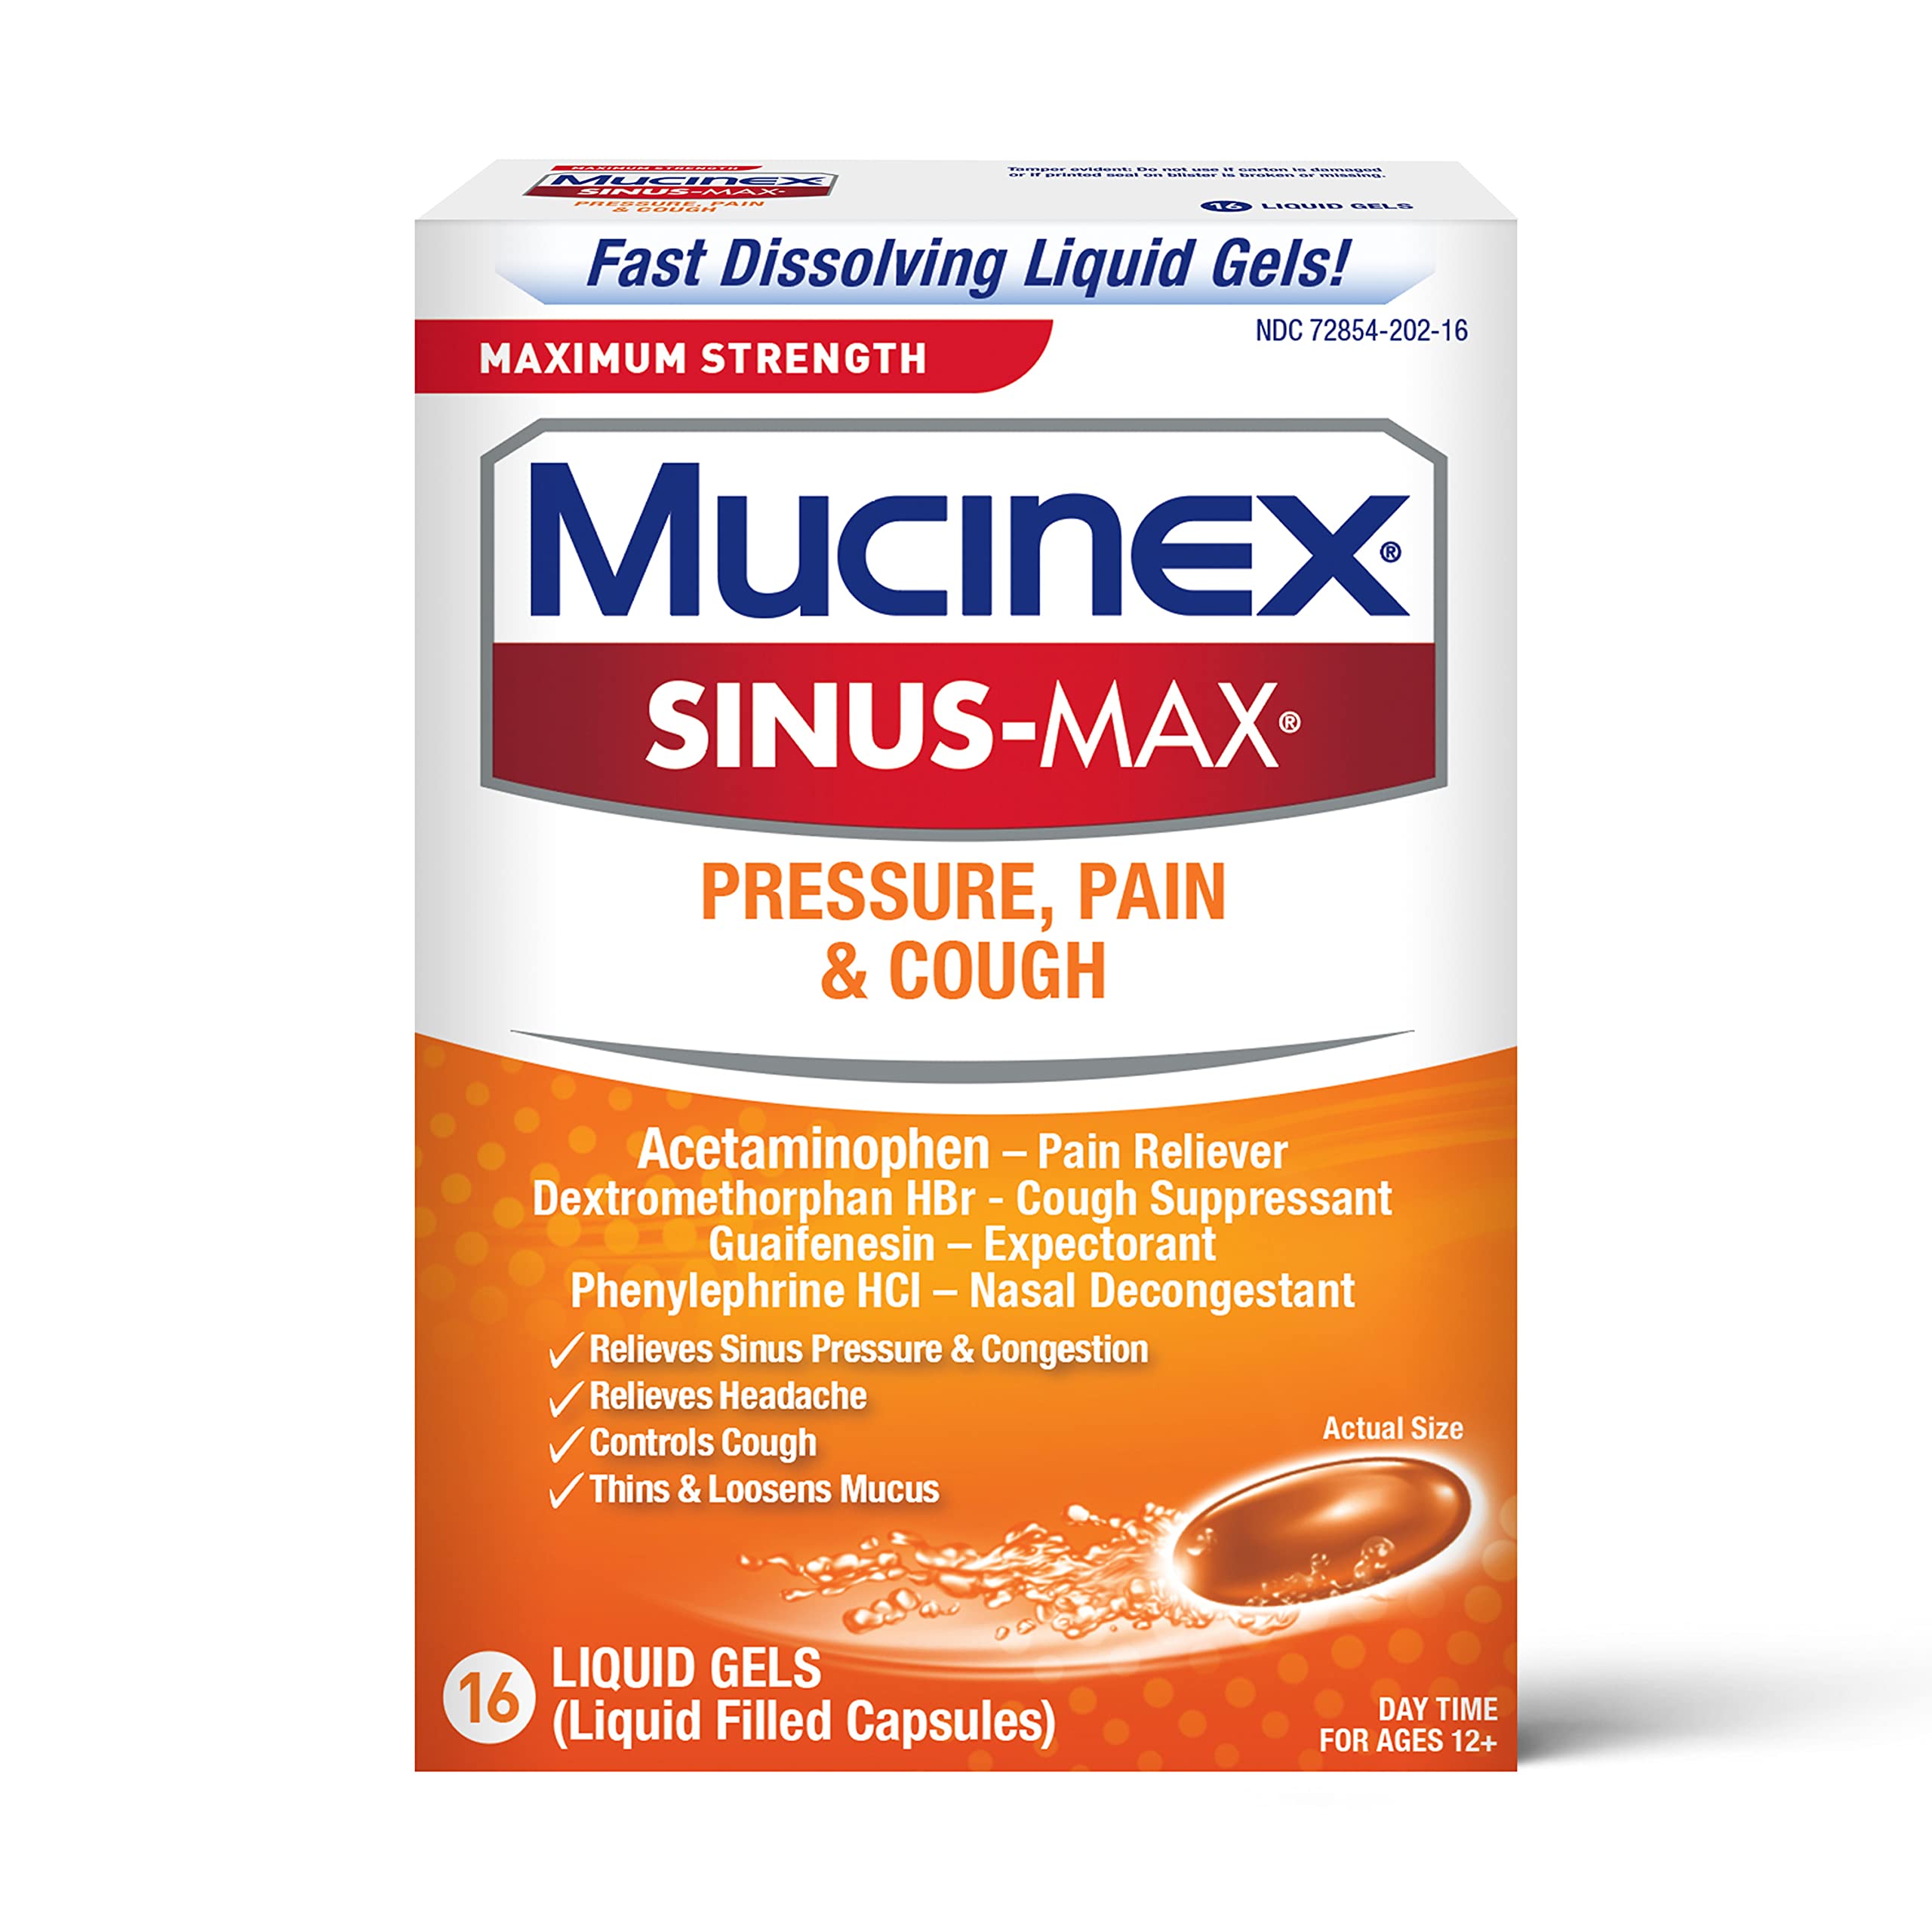 Mucinex Sinus-Max Max Strength Pressure, Pain & Cough Liquid Gels 16 ea